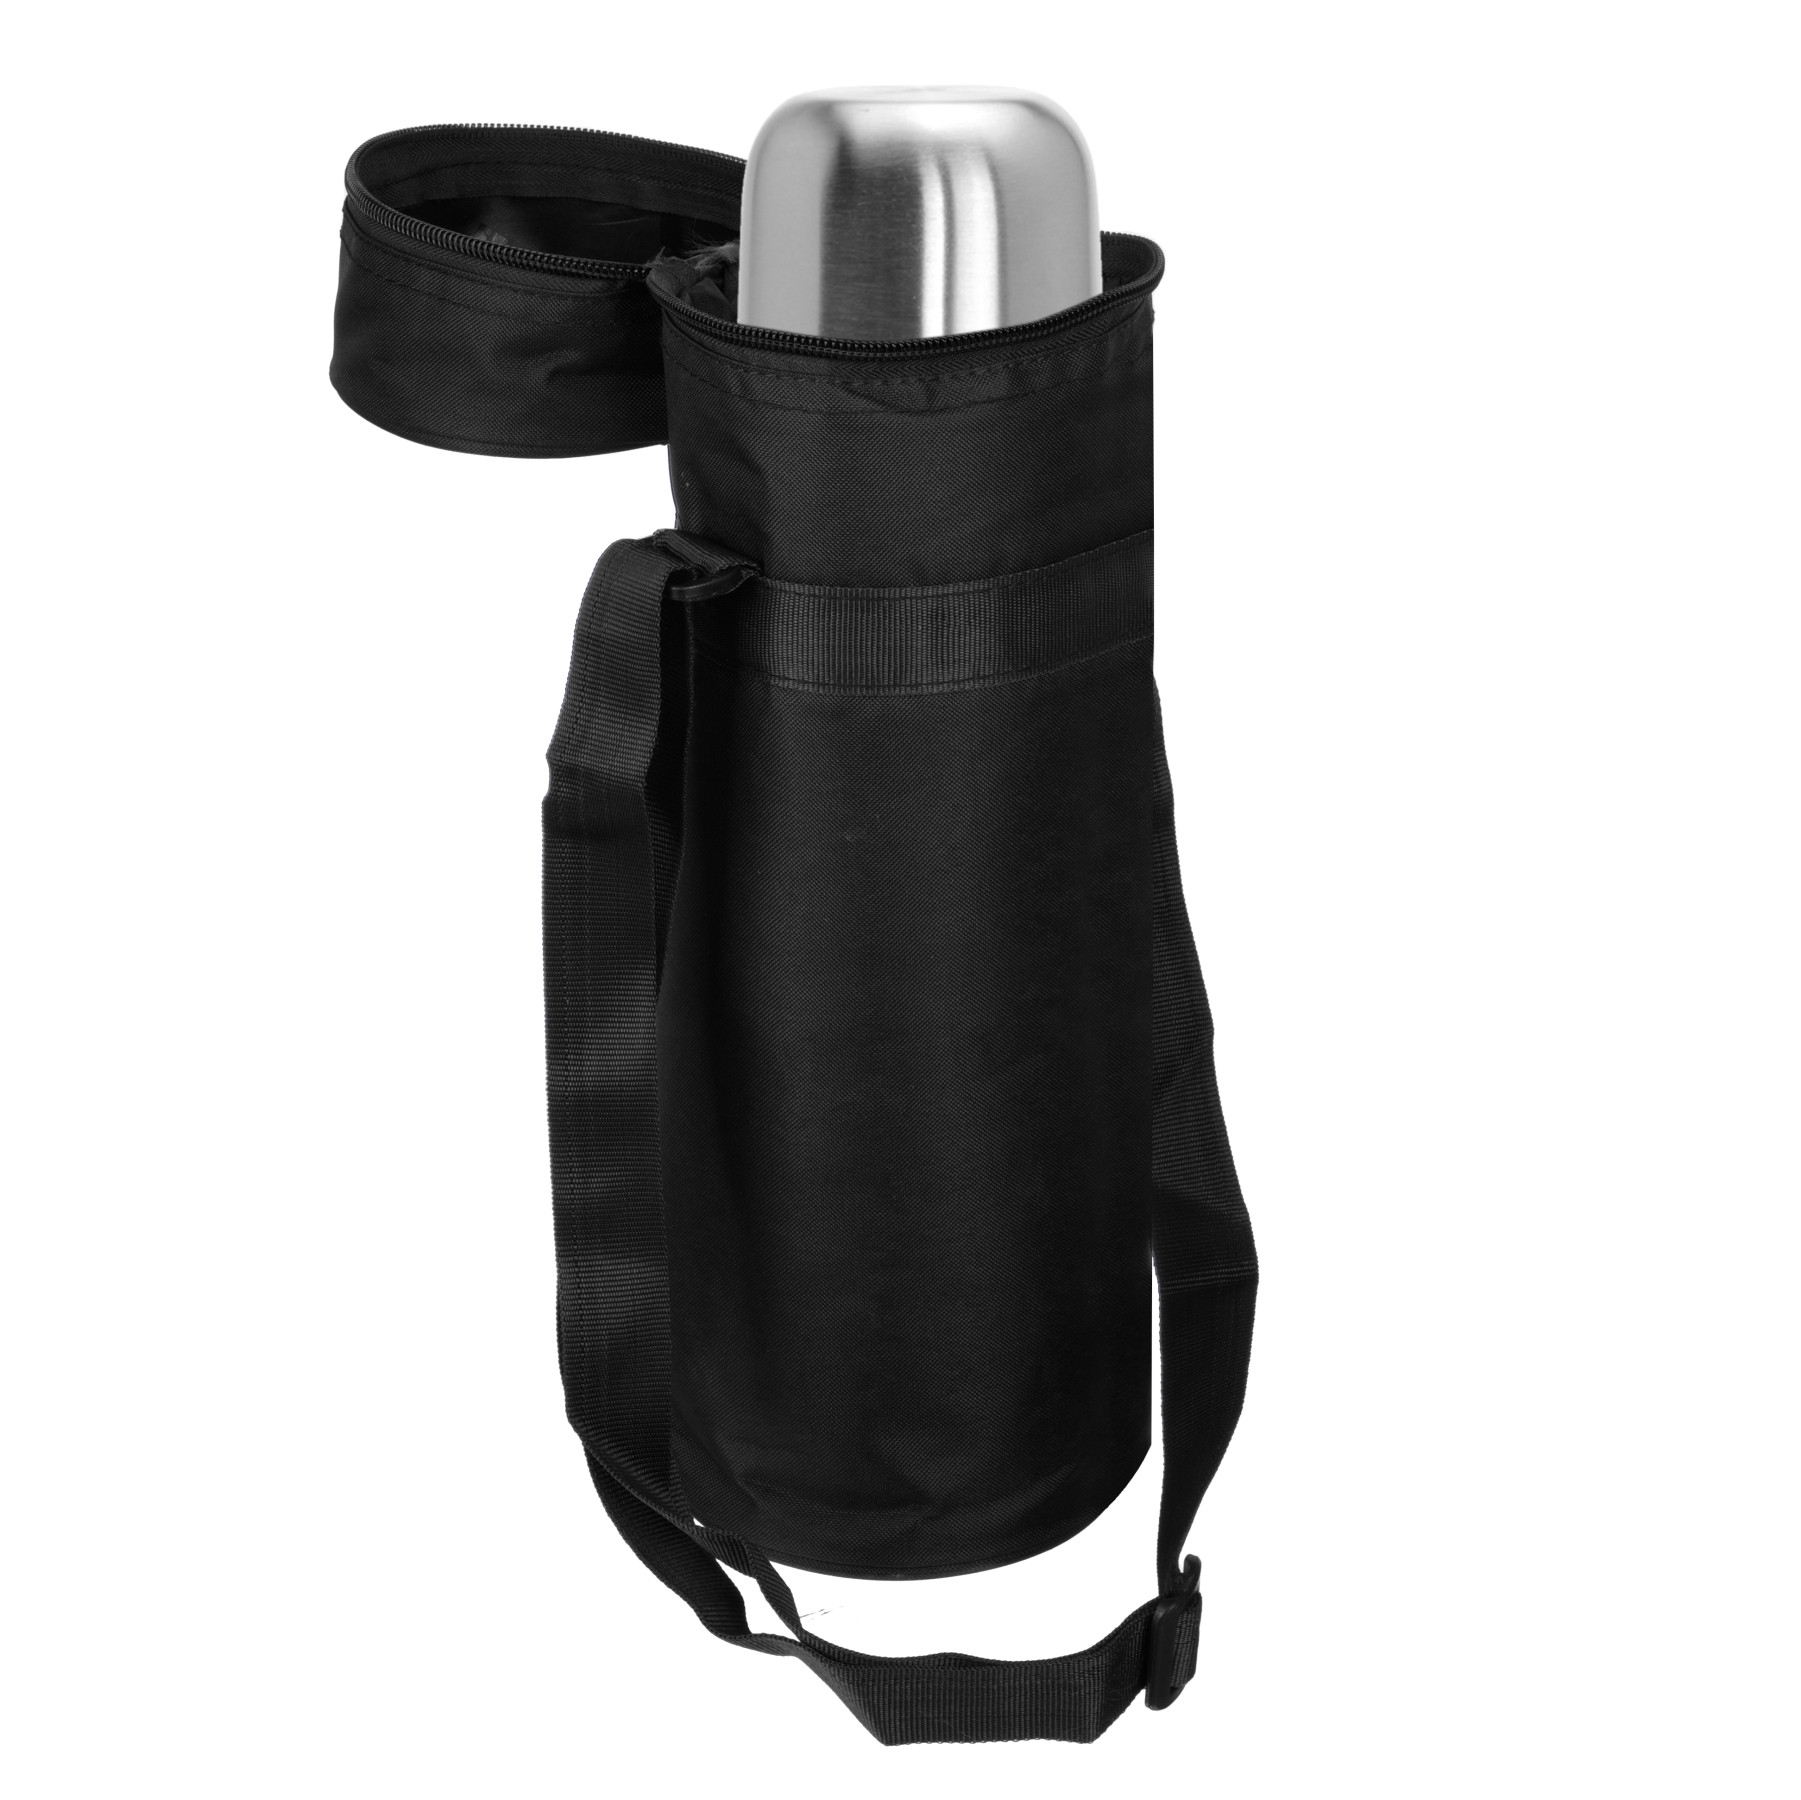 Kuber Industries Bottle Bag | Travel Water Bottle Bag | Bottle Protector Bag | Water Bottle Carrier Bag | Bottle Carry Bag | Adjustable Strap & Zipper Closure | 1 LTR | Pack of 2 | Multi